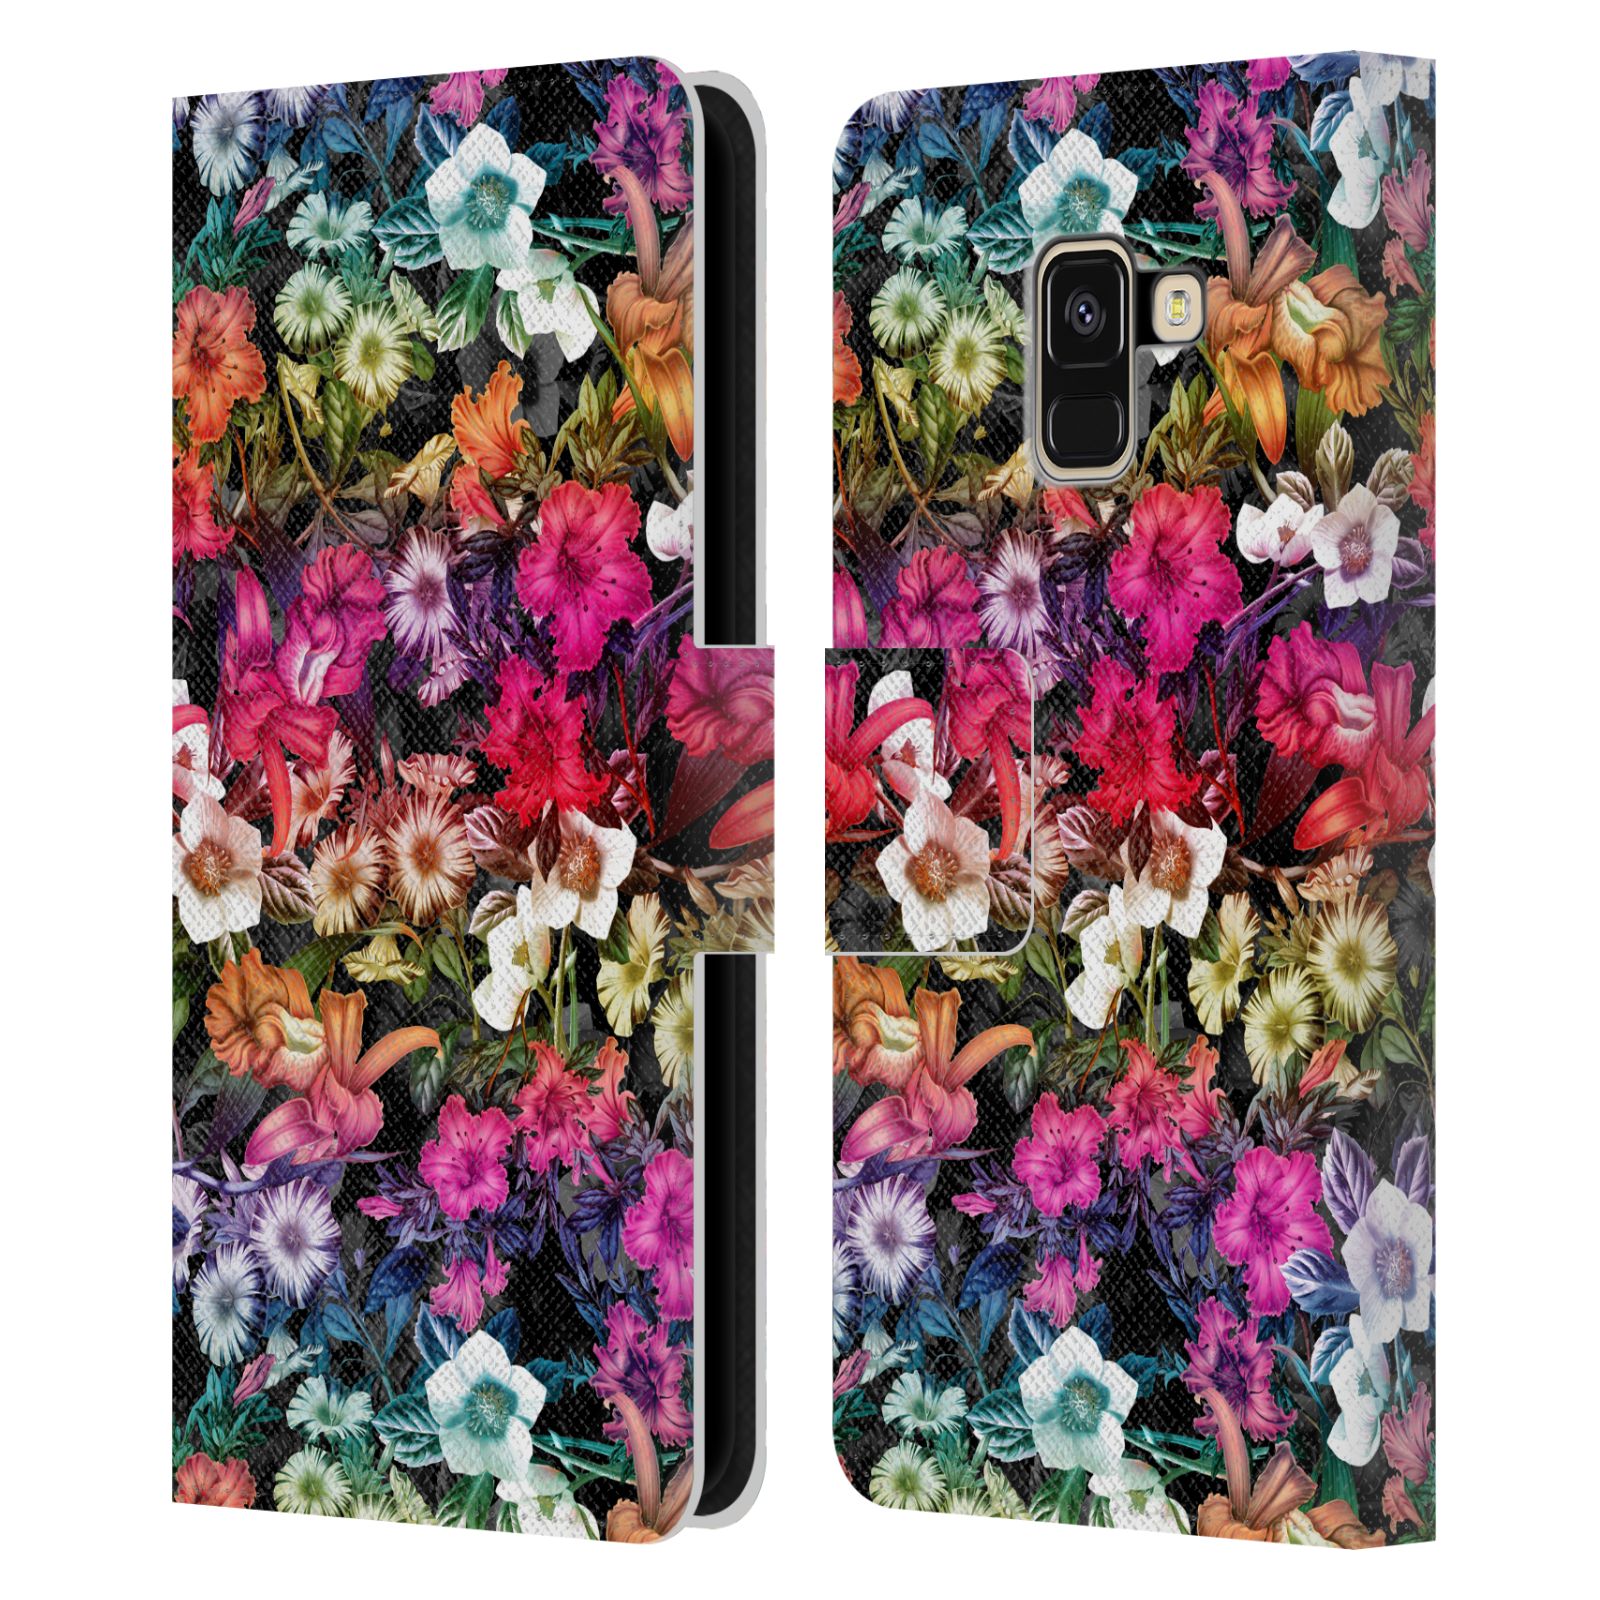 Pouzdro HEAD CASE pro mobil Samsung Galaxy A8 2018 - Burcu - Květiny multikolor